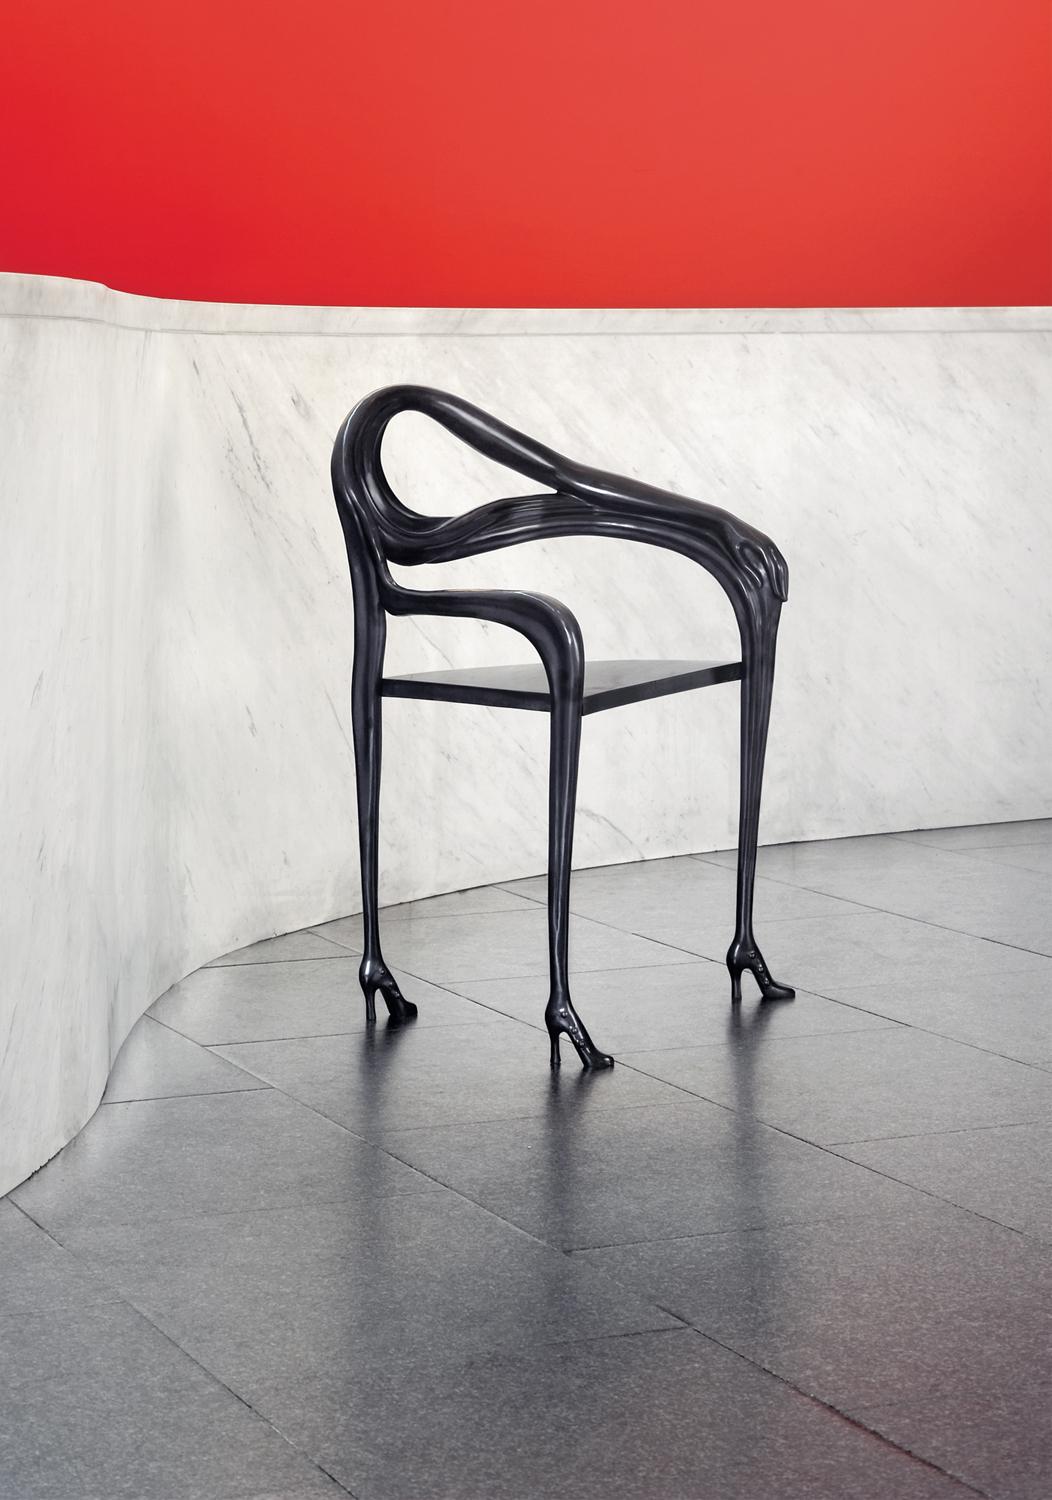 Leda Blacklabel Sessel, Limitierte Auflage, Salvador Dalí
Limitiert auf 105 Stück
Design inspiriert von einem Kunstwerk von Salvador Dalí
Abmessungen: 47 x 60 x 92 H cm
MATERIALIEN: Struktur aus poliertem Messingguss.

Design inspiriert von